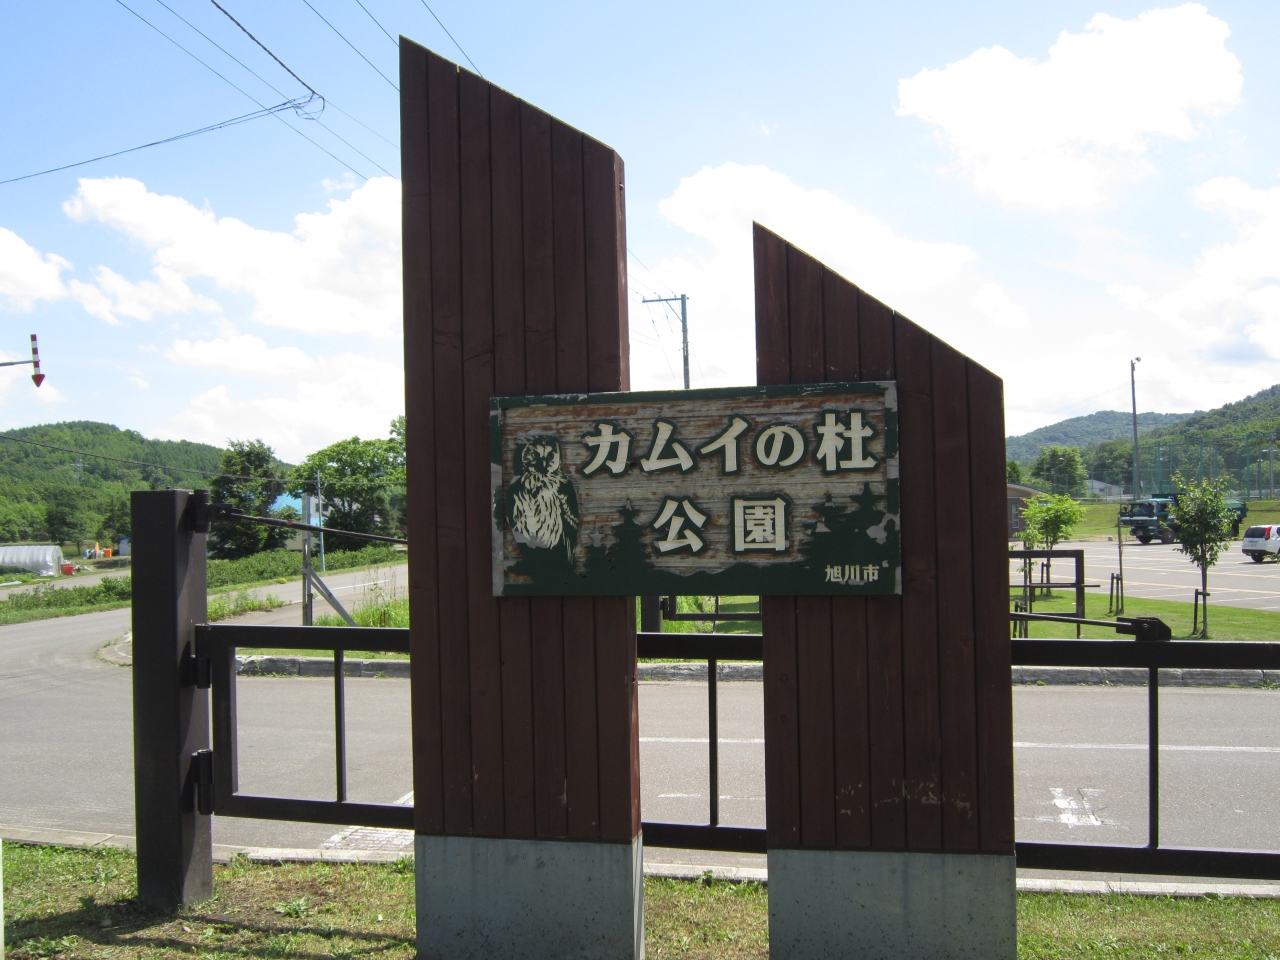 北海道の公園の家族におすすめの場所25選　13位:カムイの杜公園